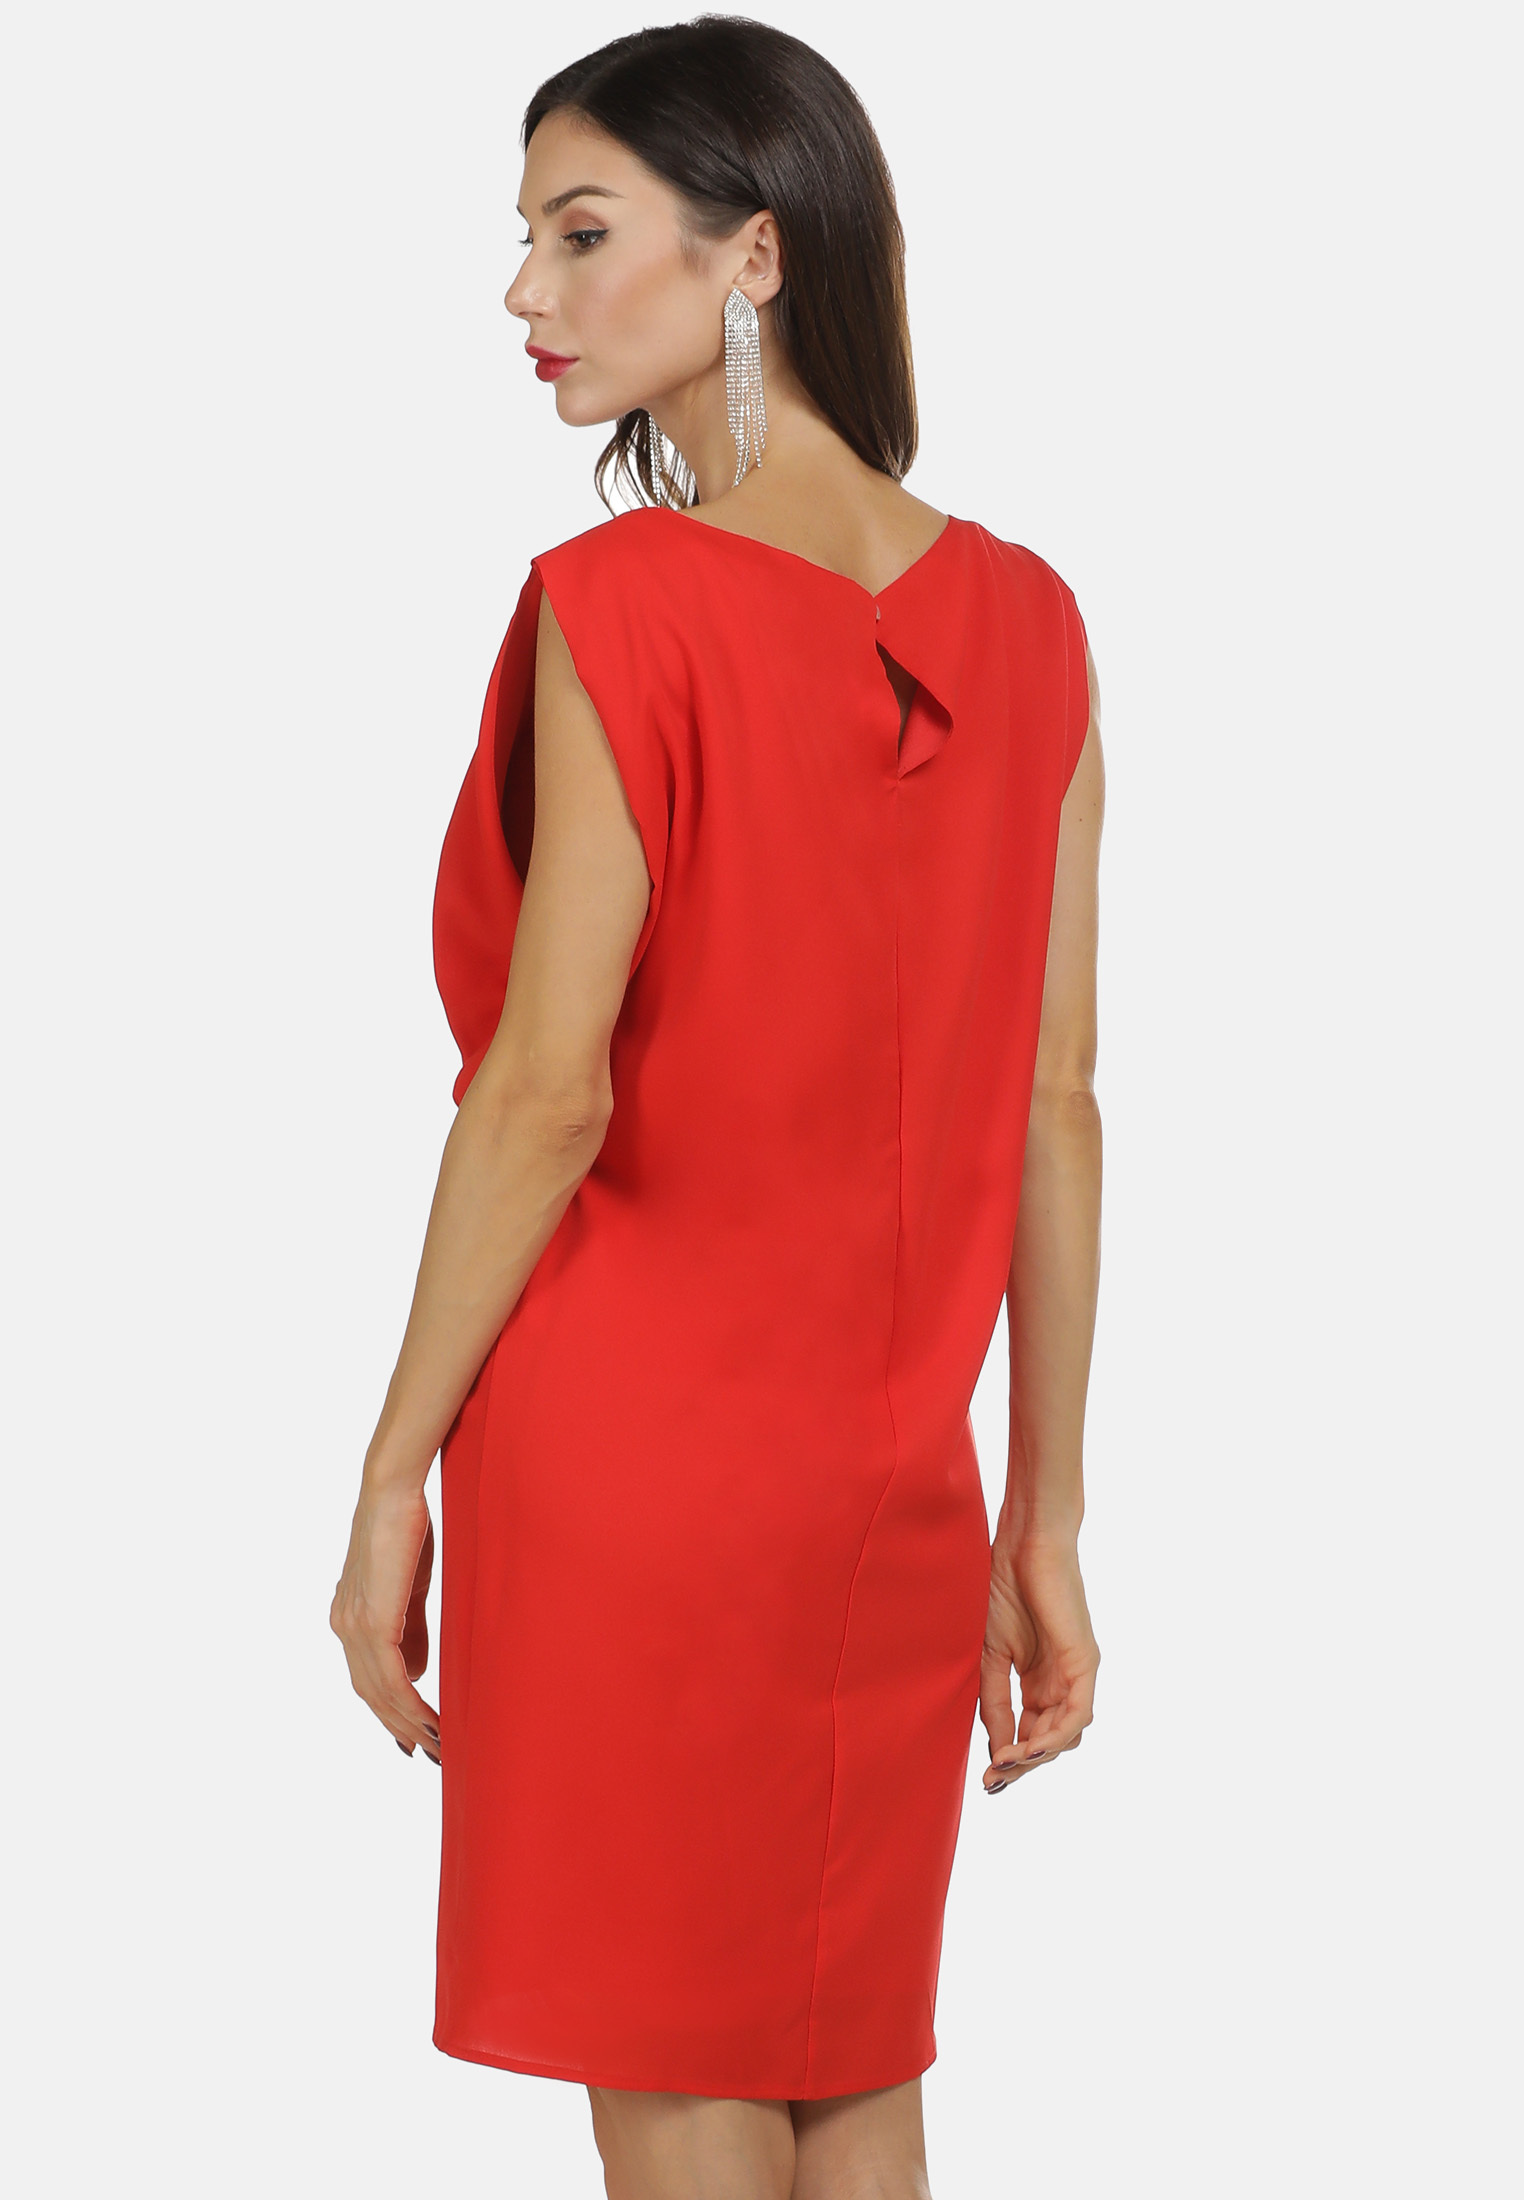 Specjalne okazje Odzież faina Letnia sukienka w kolorze Czerwonym 